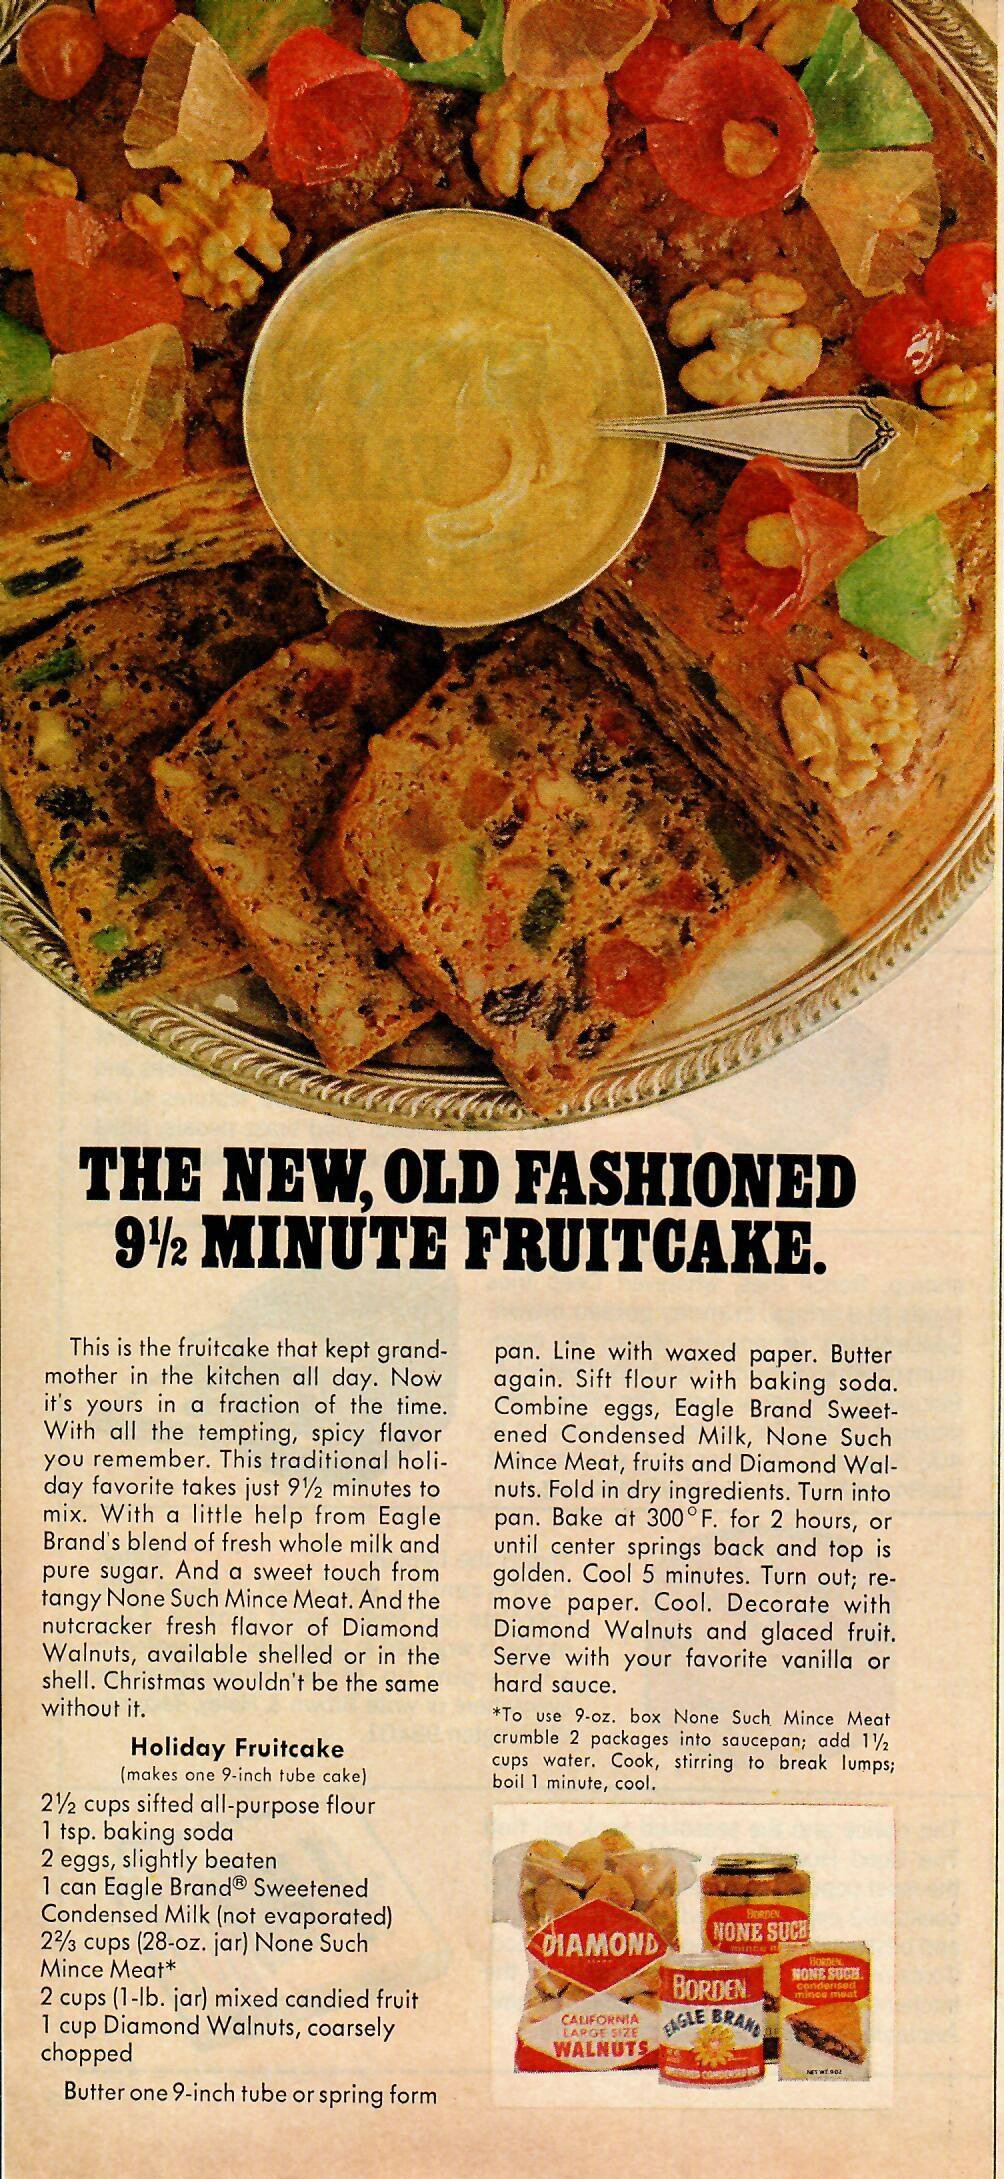 9 Minute Holiday Fruitcake